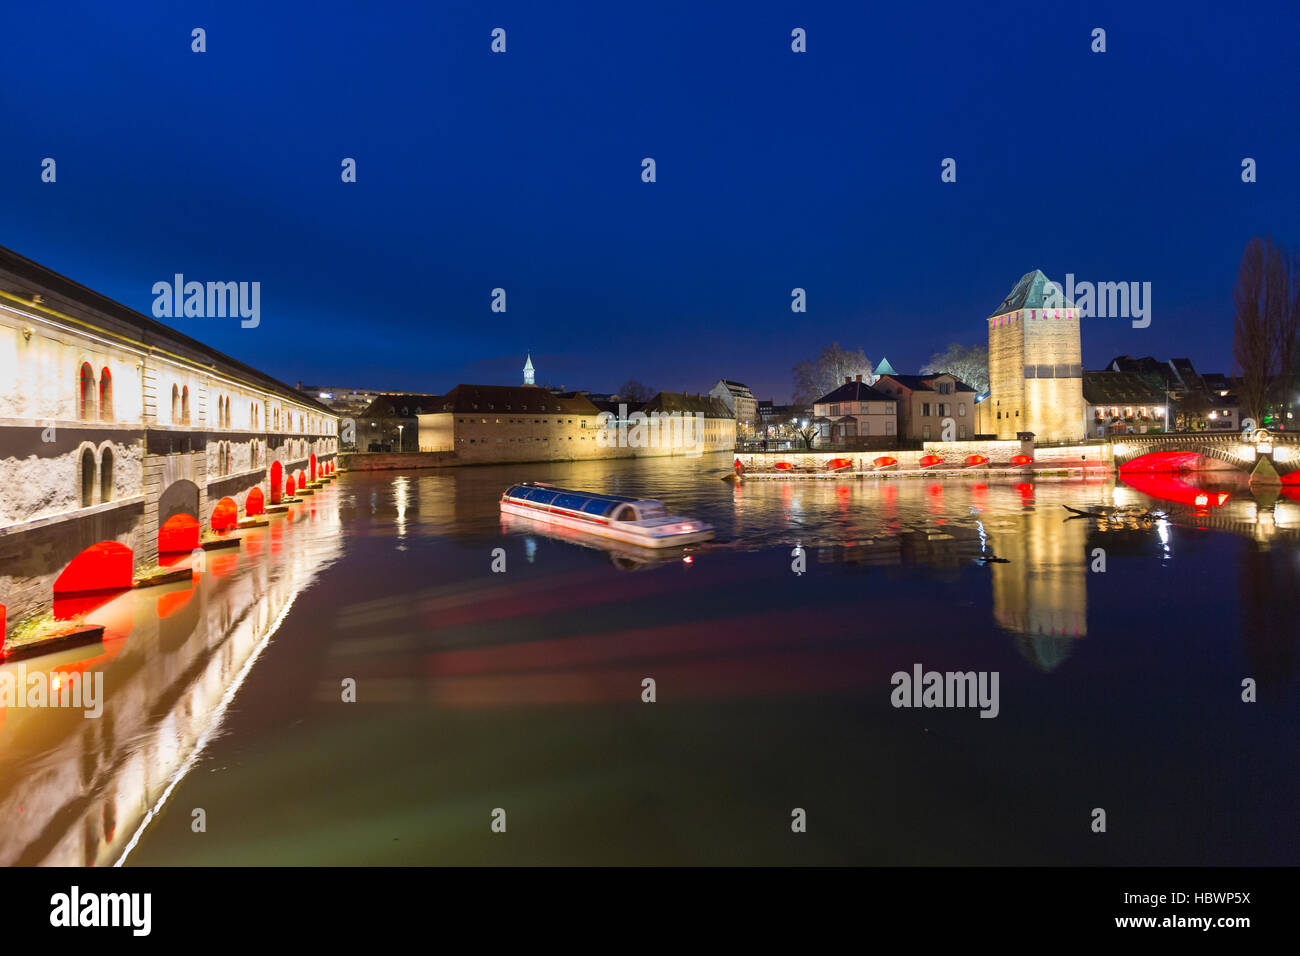 Bateau d'excursion avec les touristes en face du Barrage Vauban et Ponts Couverts dans la nuit le long de la rivière Ill Strasbourg, Alsace, France Banque D'Images